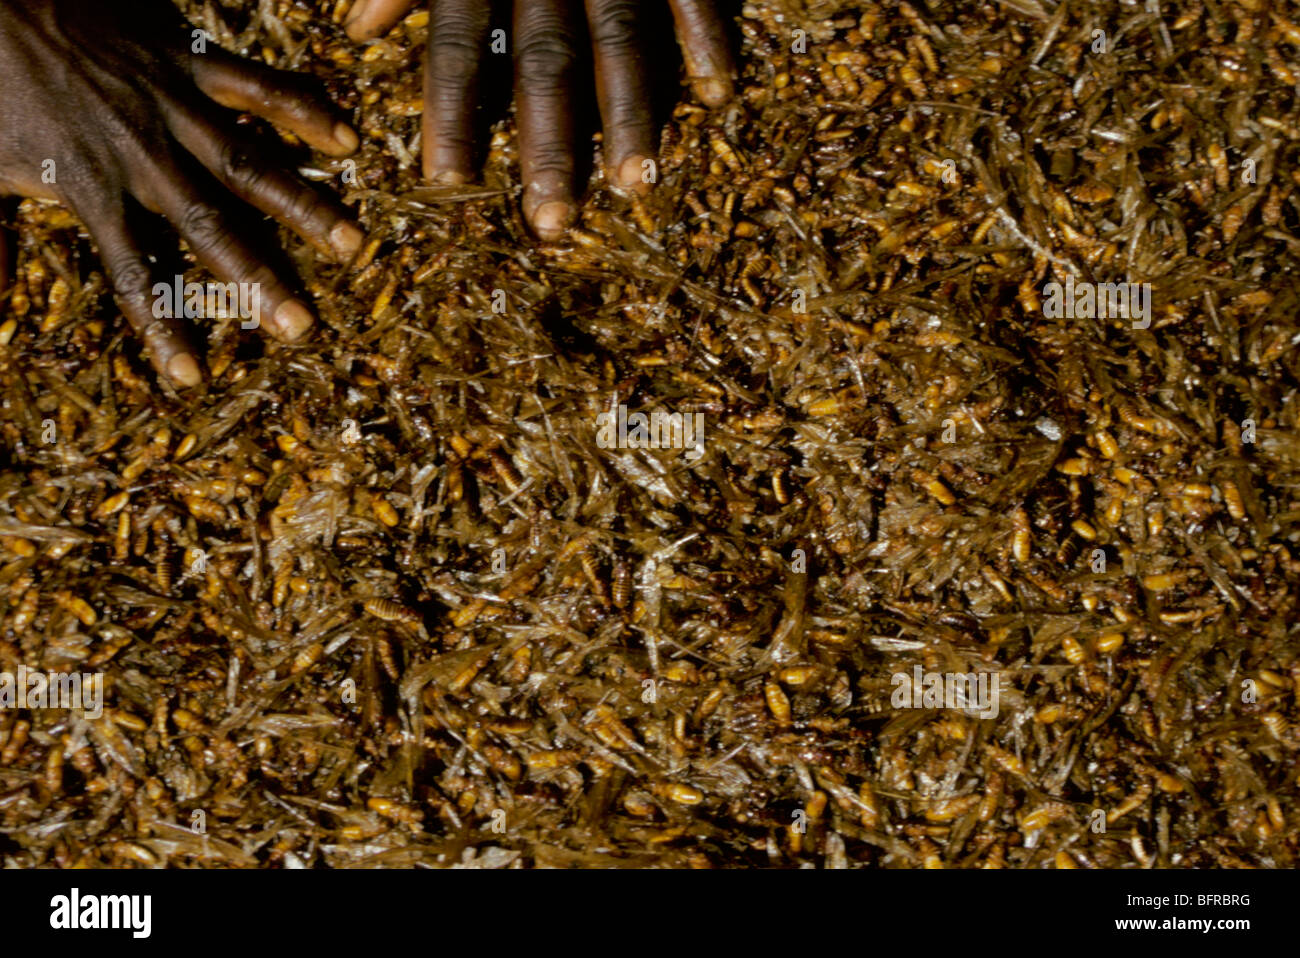 Recueillir et manger local Motswana termites reproduction ou alates lorsqu'ils sortent de leurs colonies pendant les pluies d'été Banque D'Images